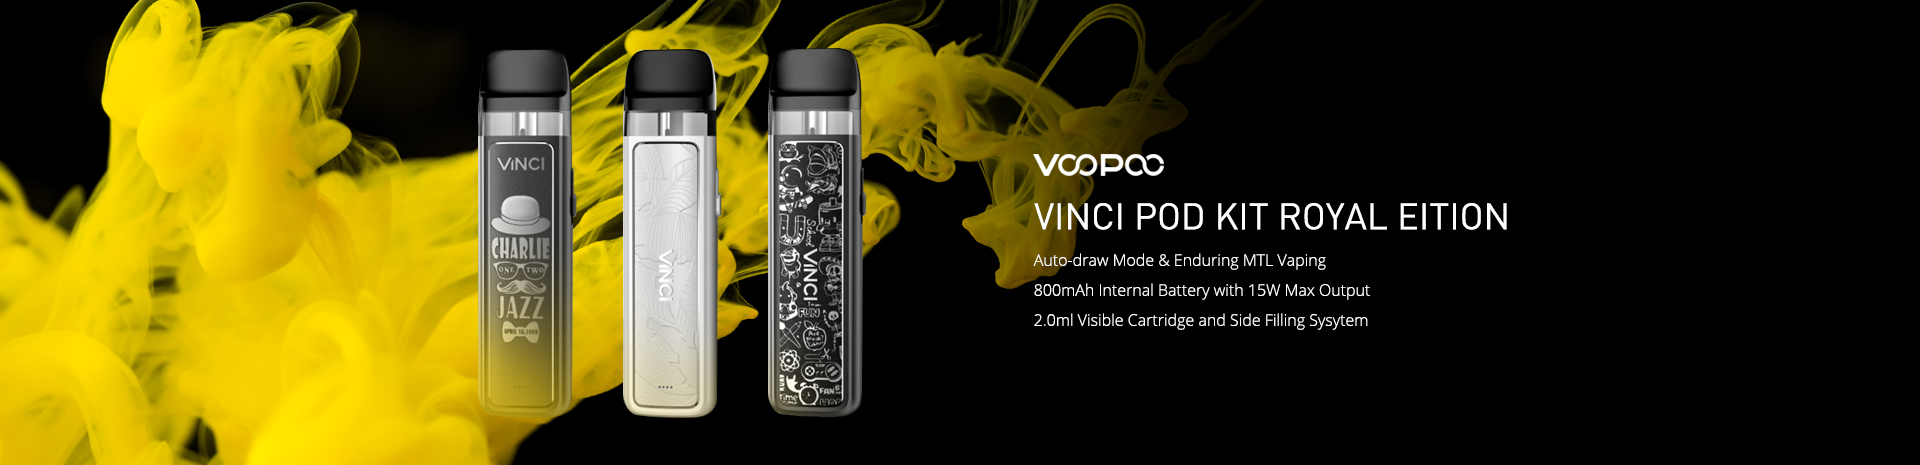 VOOPOO VINCI Pod Kit Royal Edition